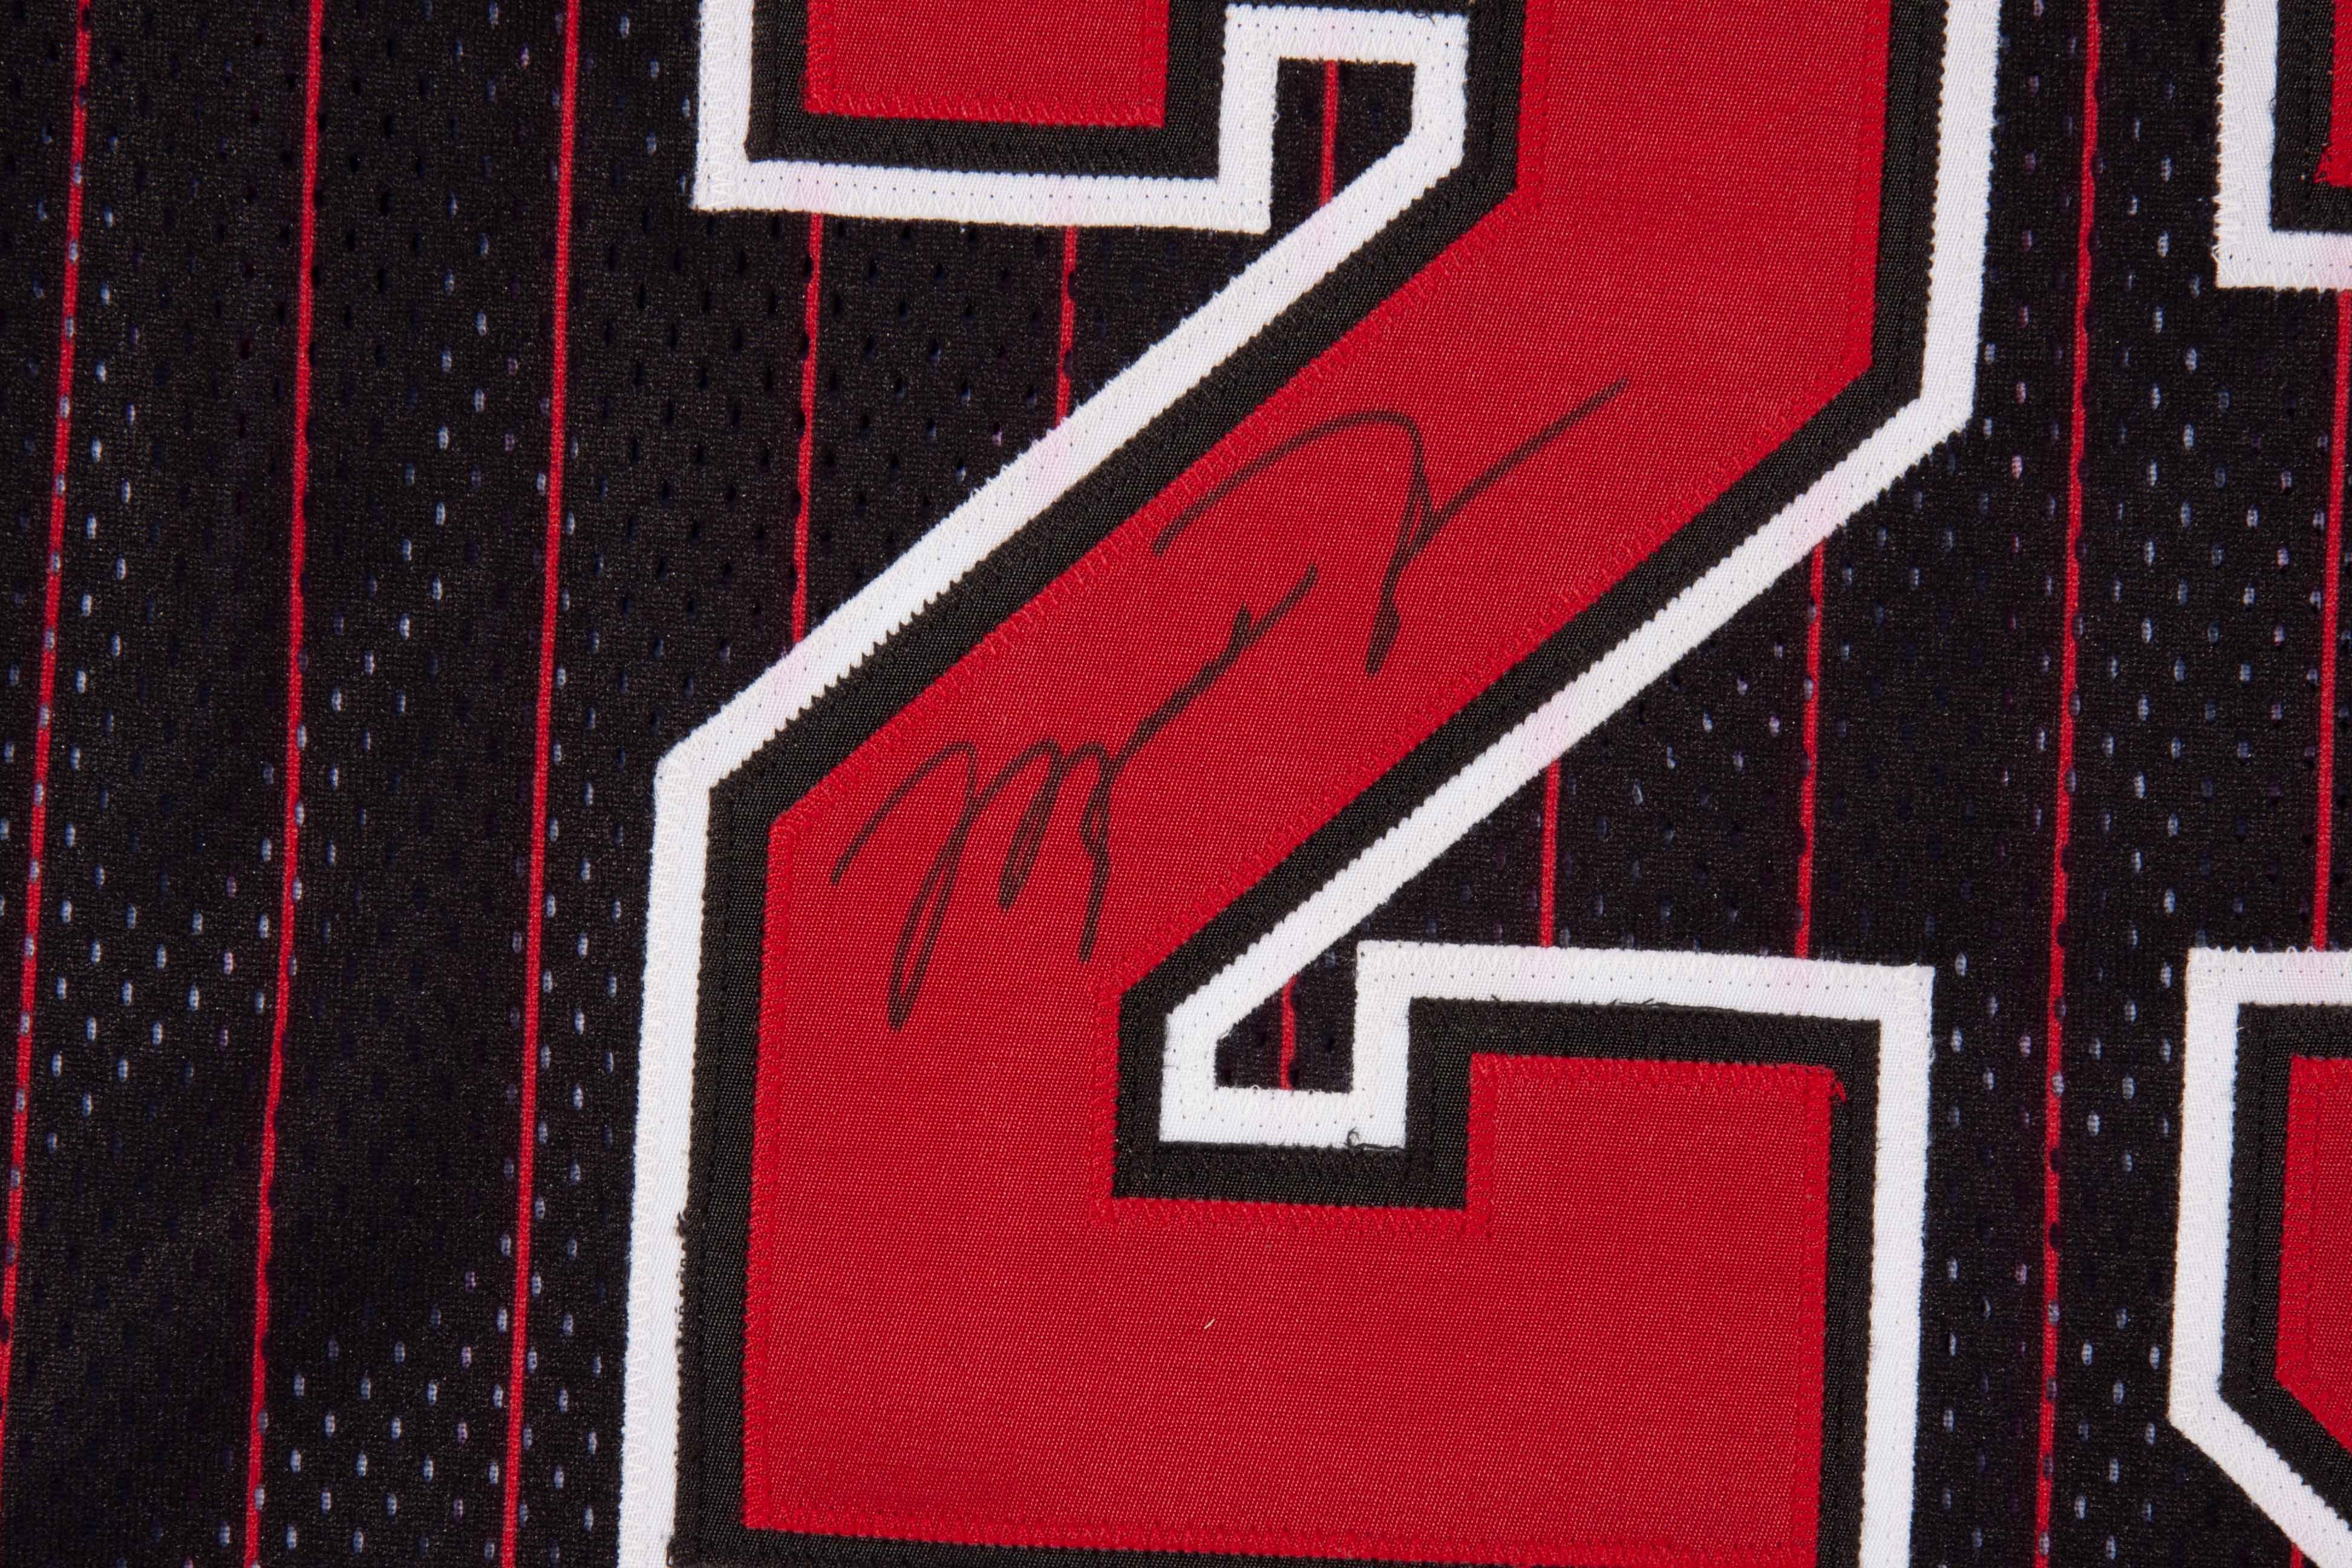 Lot Detail - 1995-96 Michael Jordan Autographed Chicago Bulls